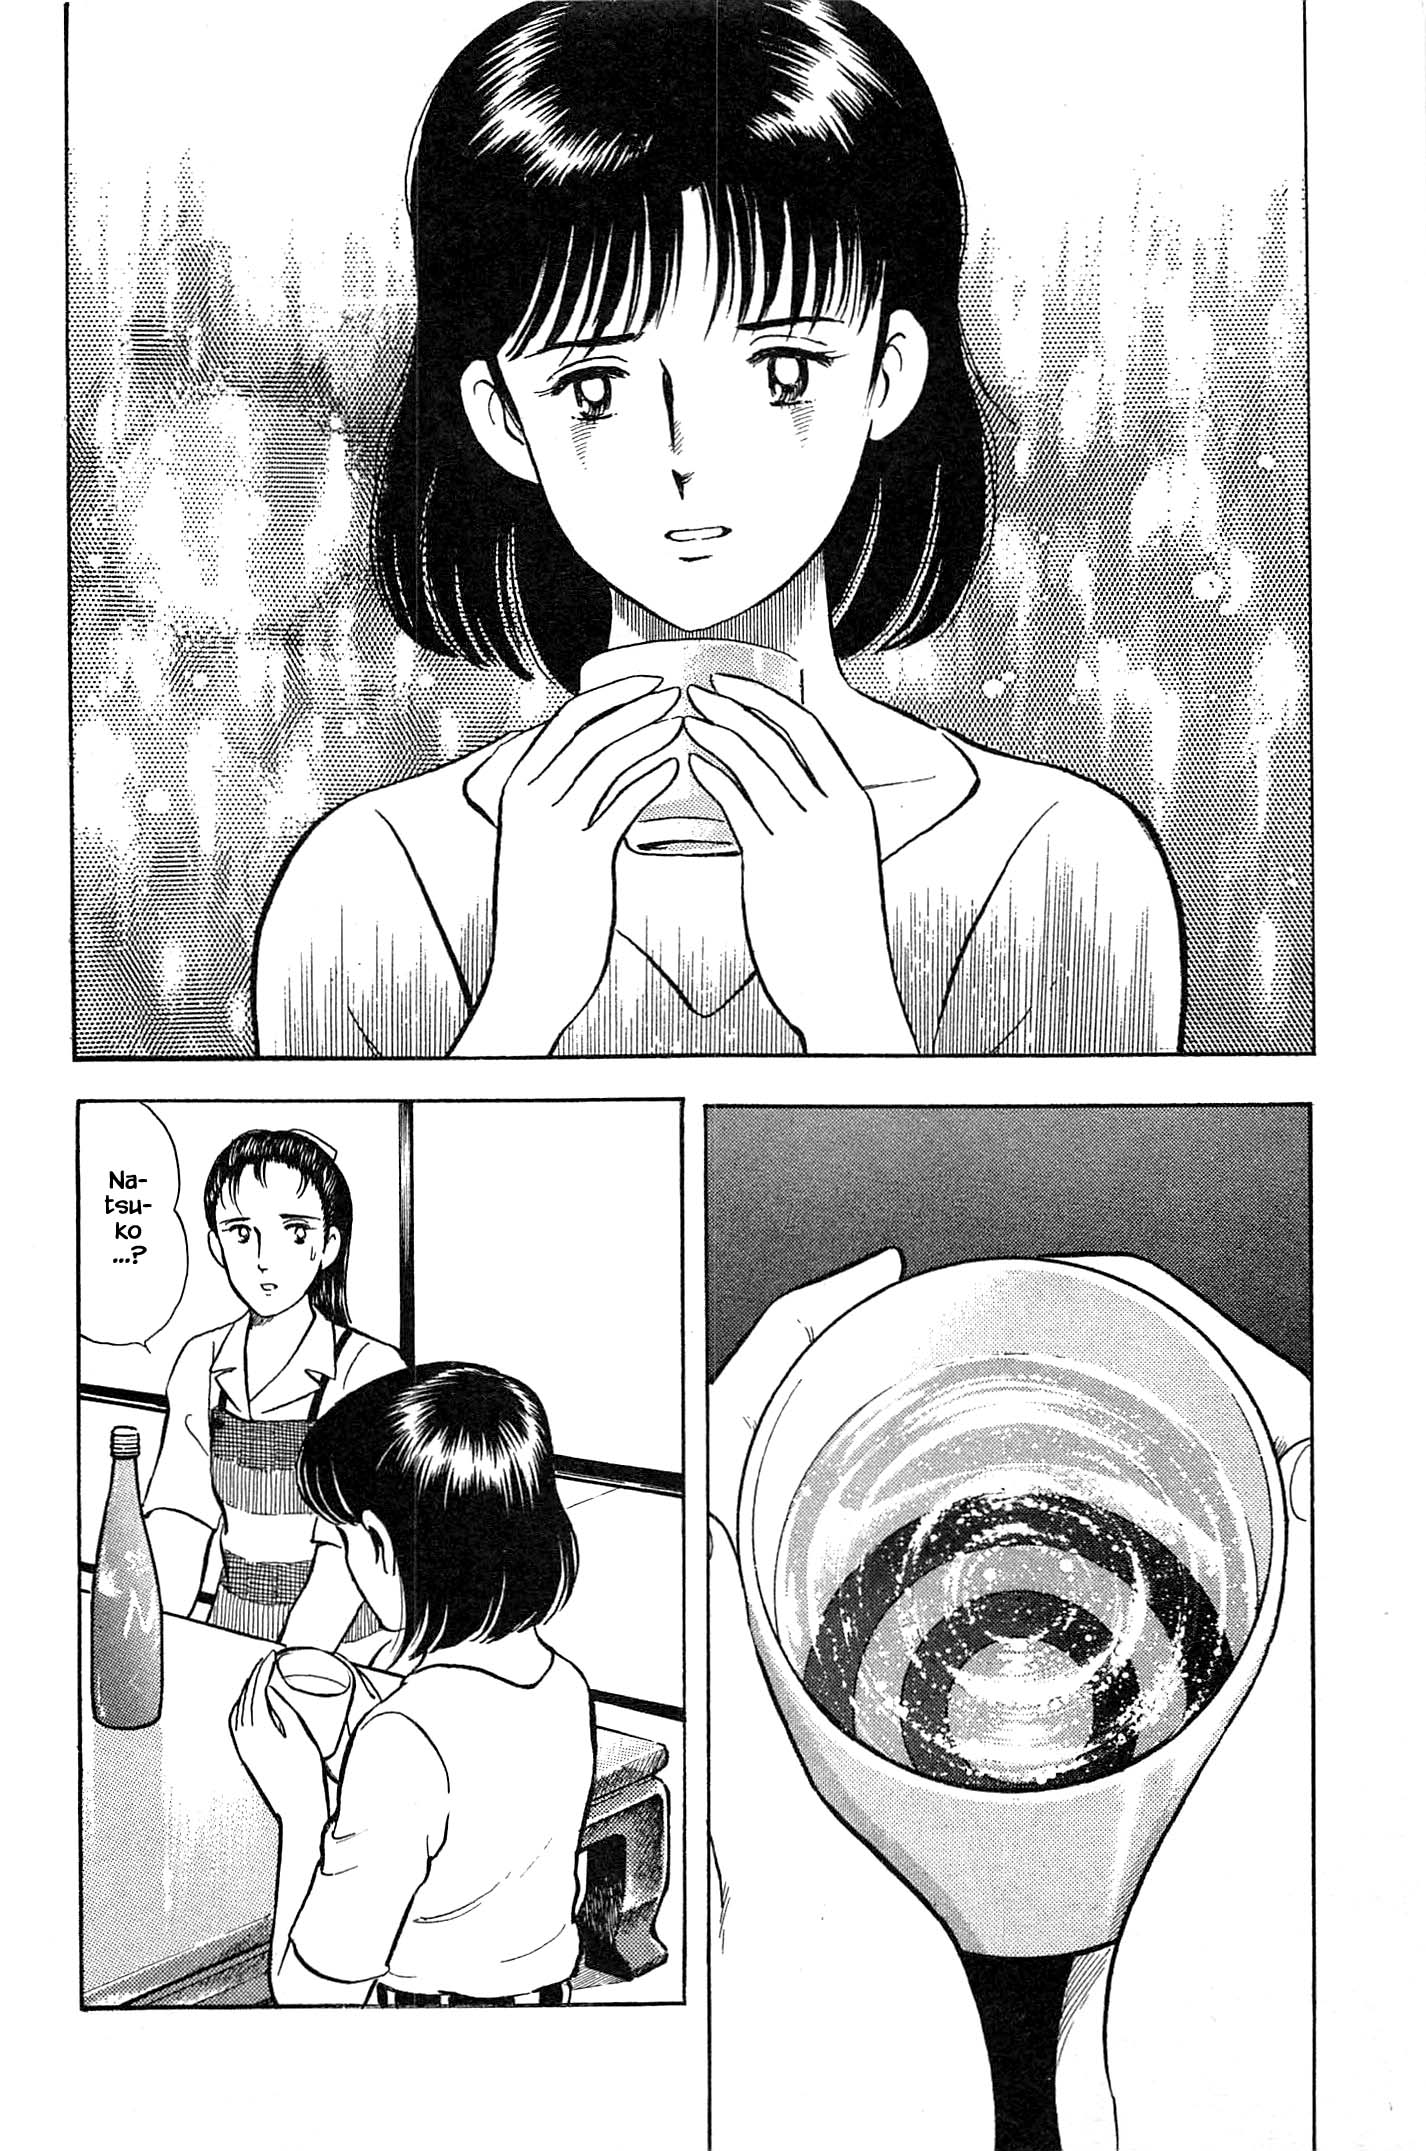 Natsuko's Sake - chapter 96 - #2